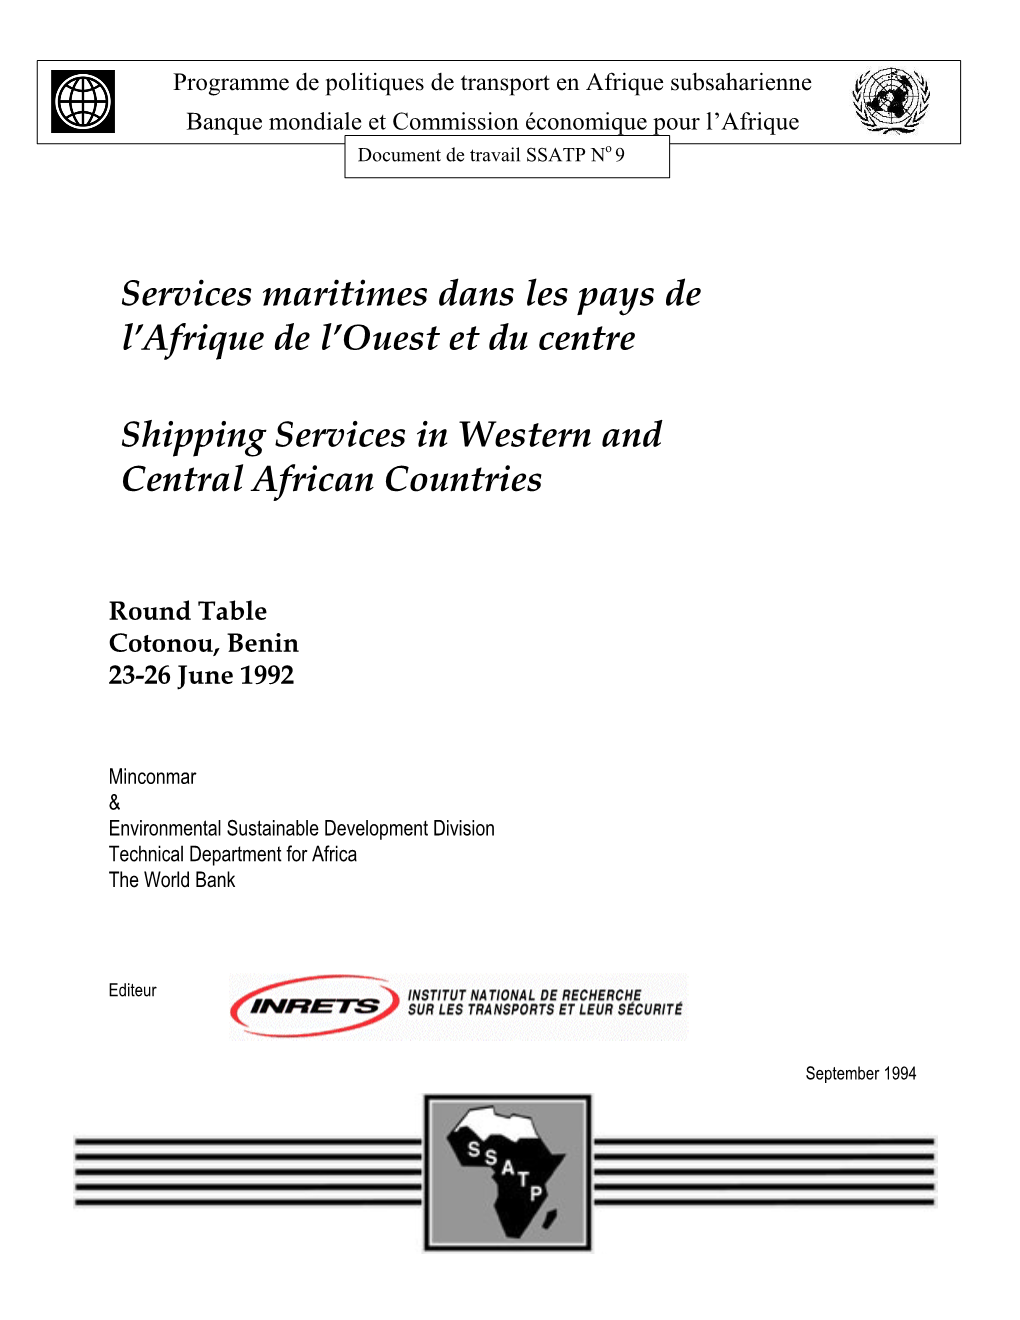 Services Maritimes Dans Les Pays De L'afrique De L'ouest Et Du Centre